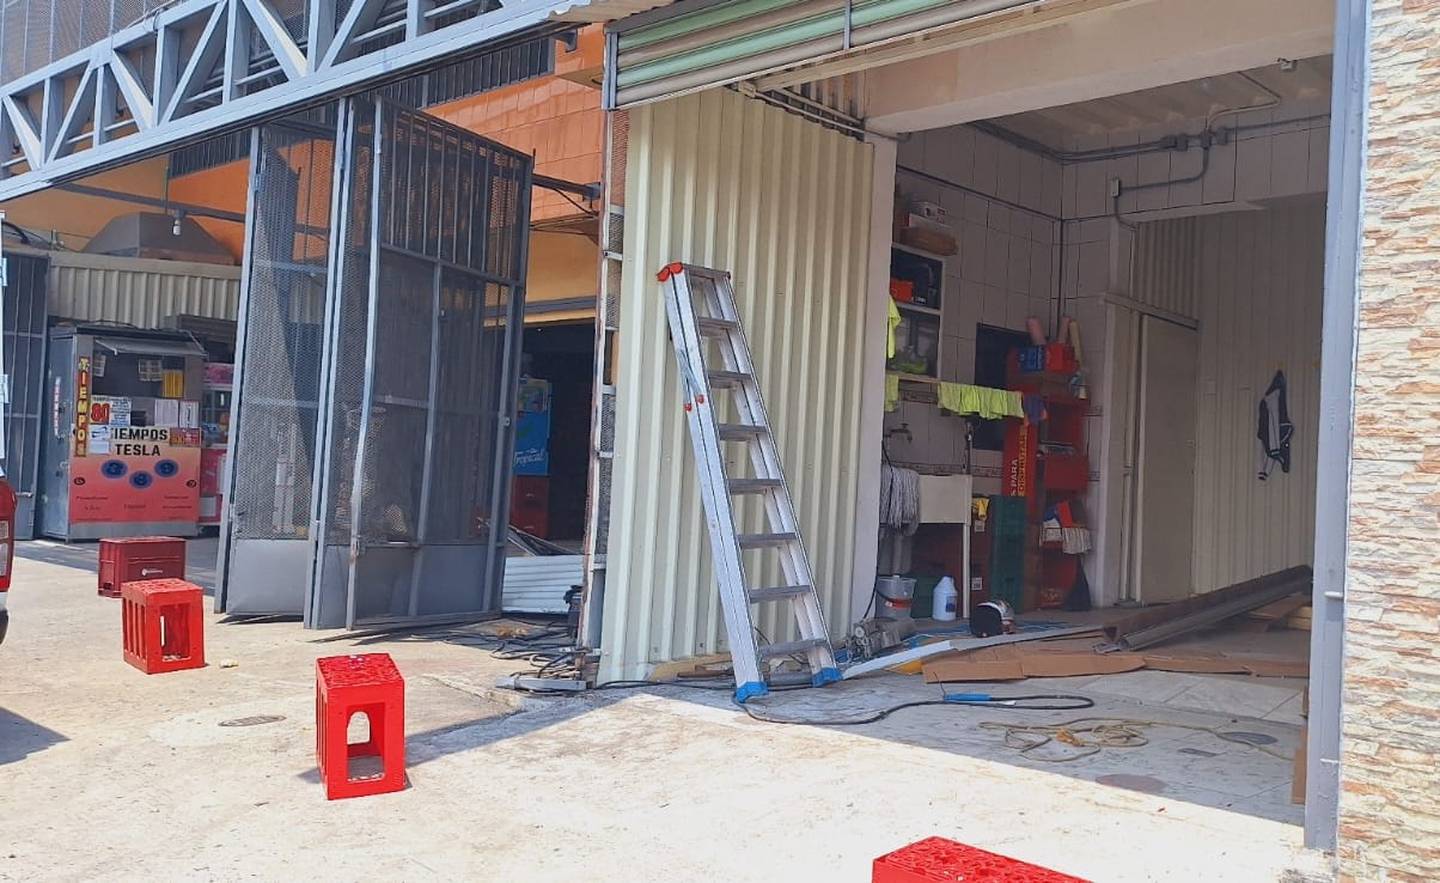 Vehículo donde viajaba Carlos Barahoa chocó contra fachada de supermercado en Guadalupe. Dueño del comercio reportó daños en portón y pared.